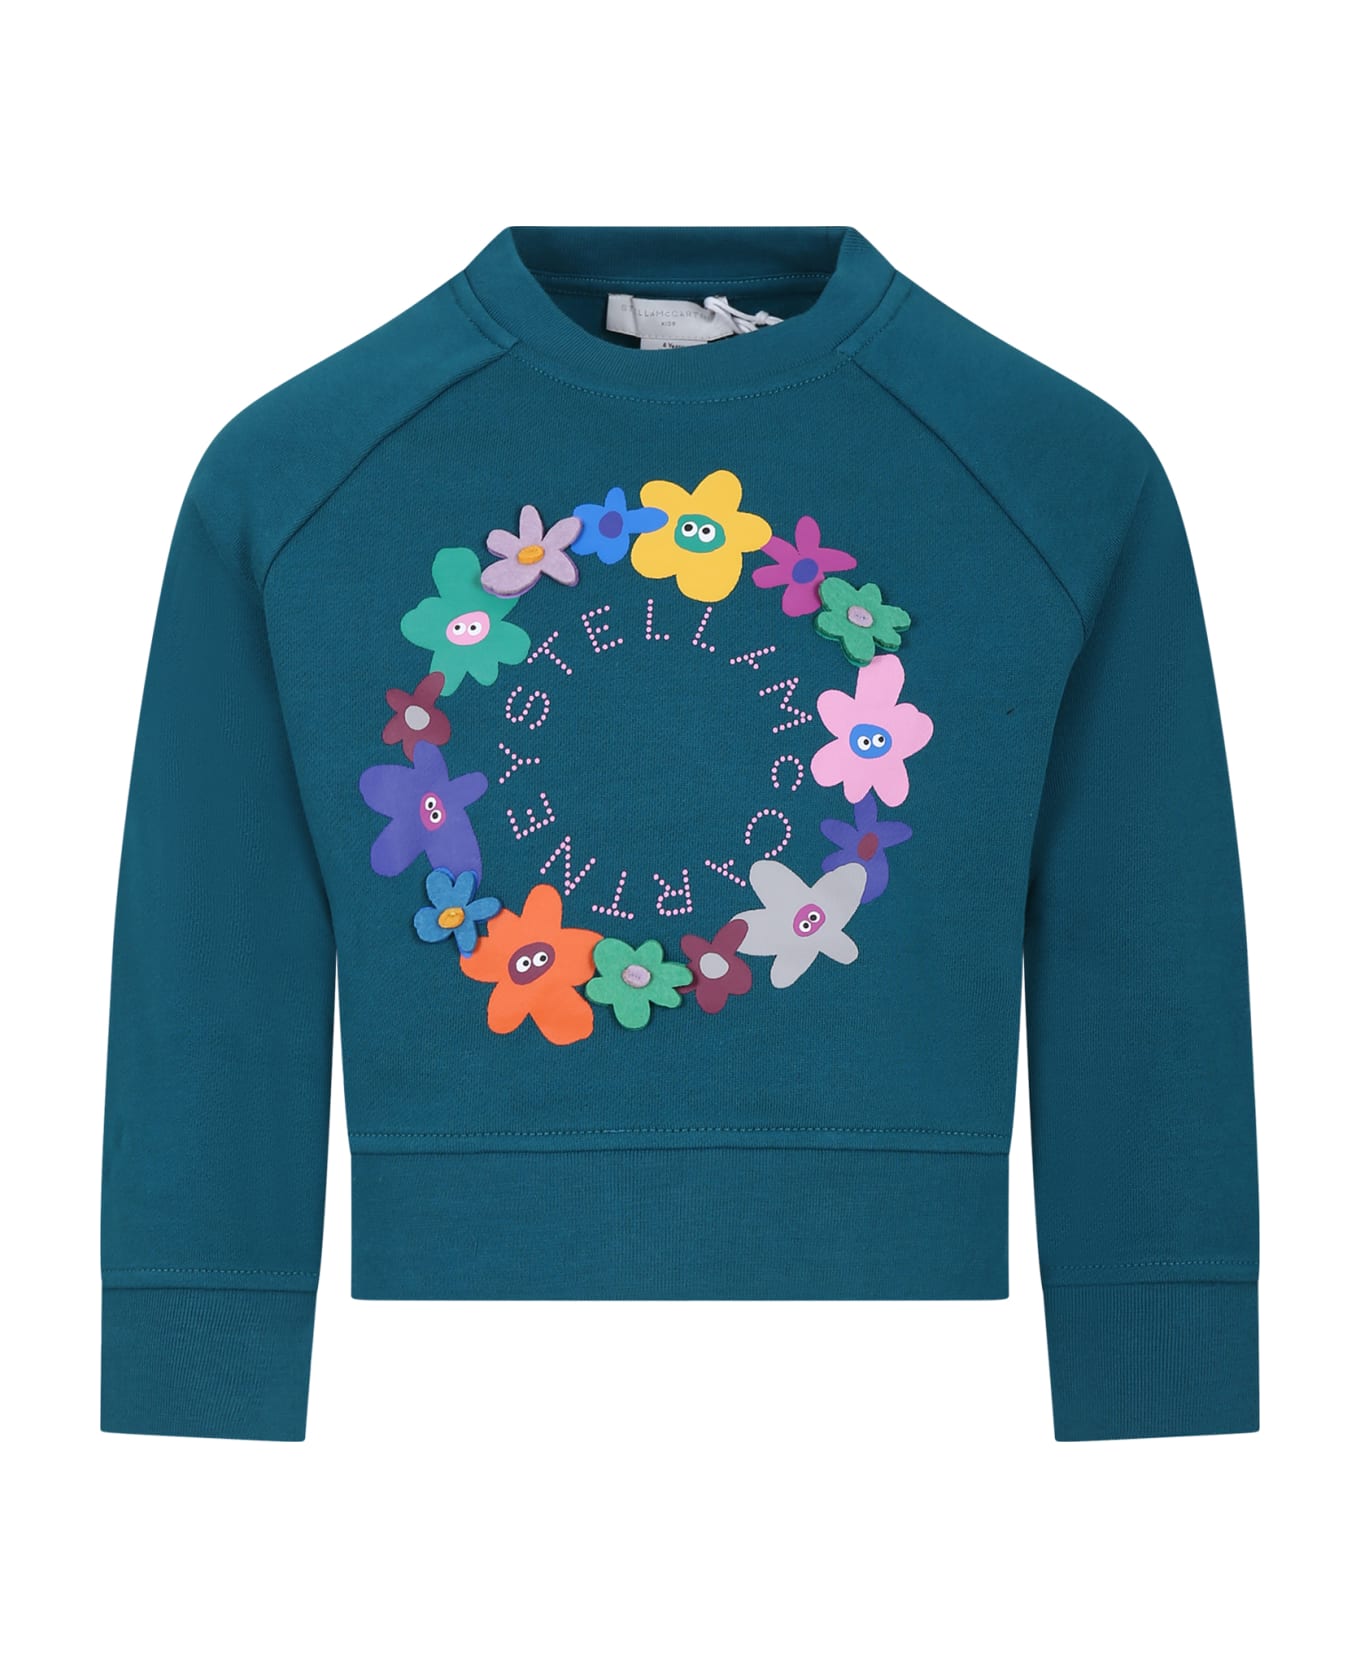 Stella McCartney Kids Green Sweatshirt For Girl With Flowers And Logo - Green ニットウェア＆スウェットシャツ